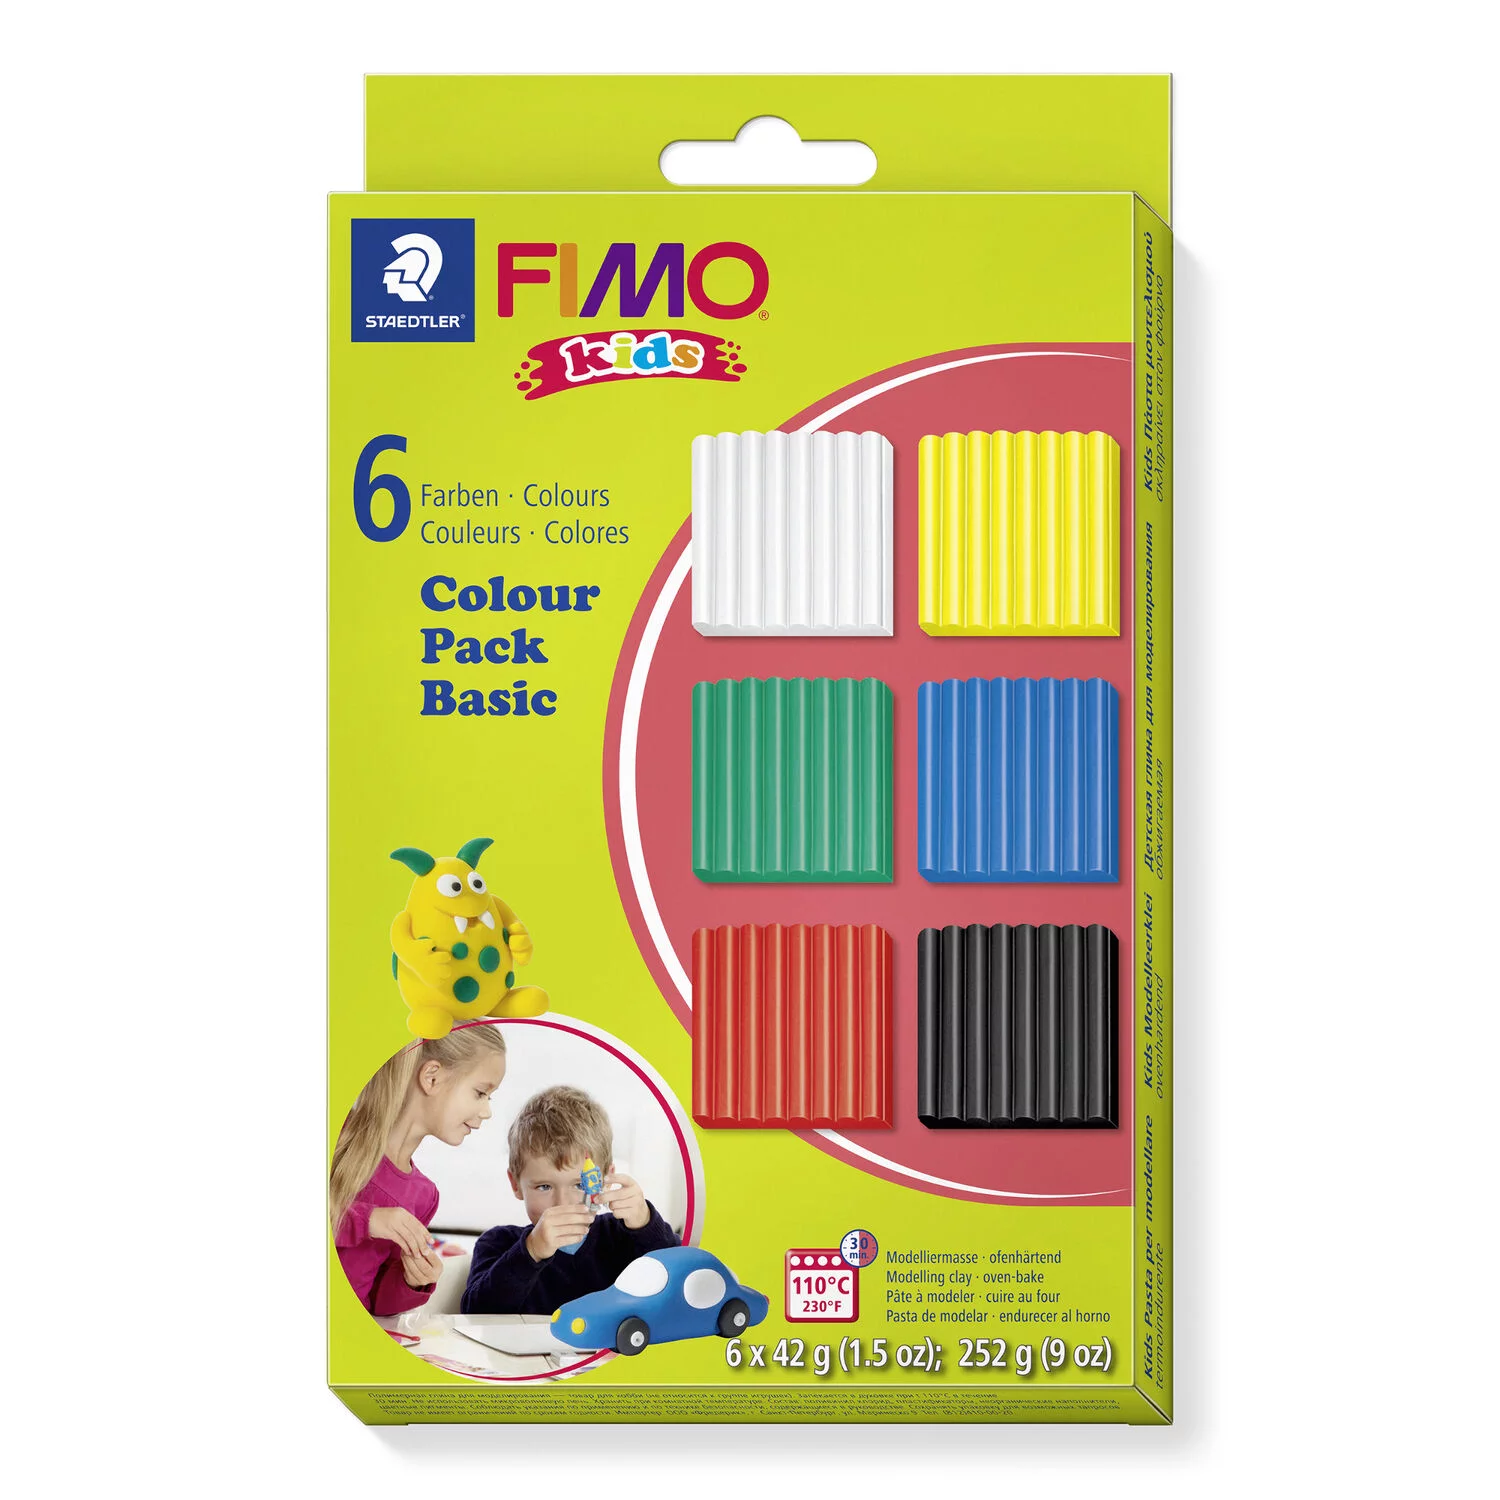 STAEDTLER 8032-01 - Fimo kids Set "Basic" - ofenhärtende Modelliermasse, 6x42g